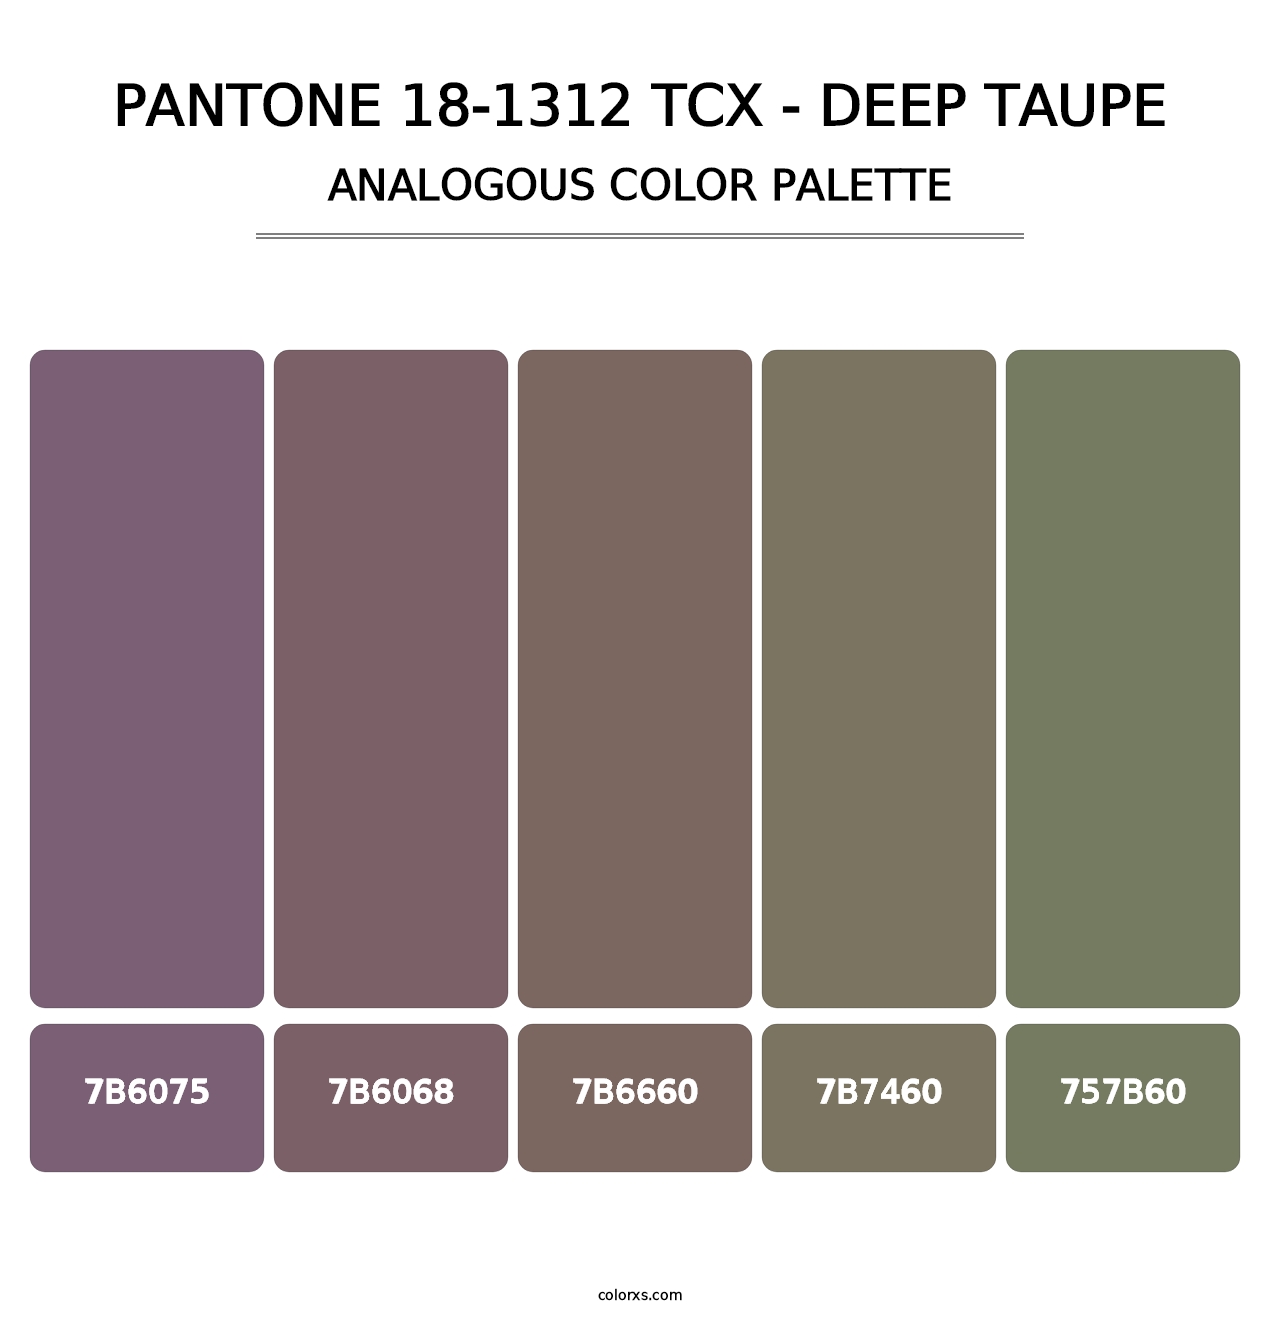 PANTONE 18-1312 TCX - Deep Taupe - Analogous Color Palette